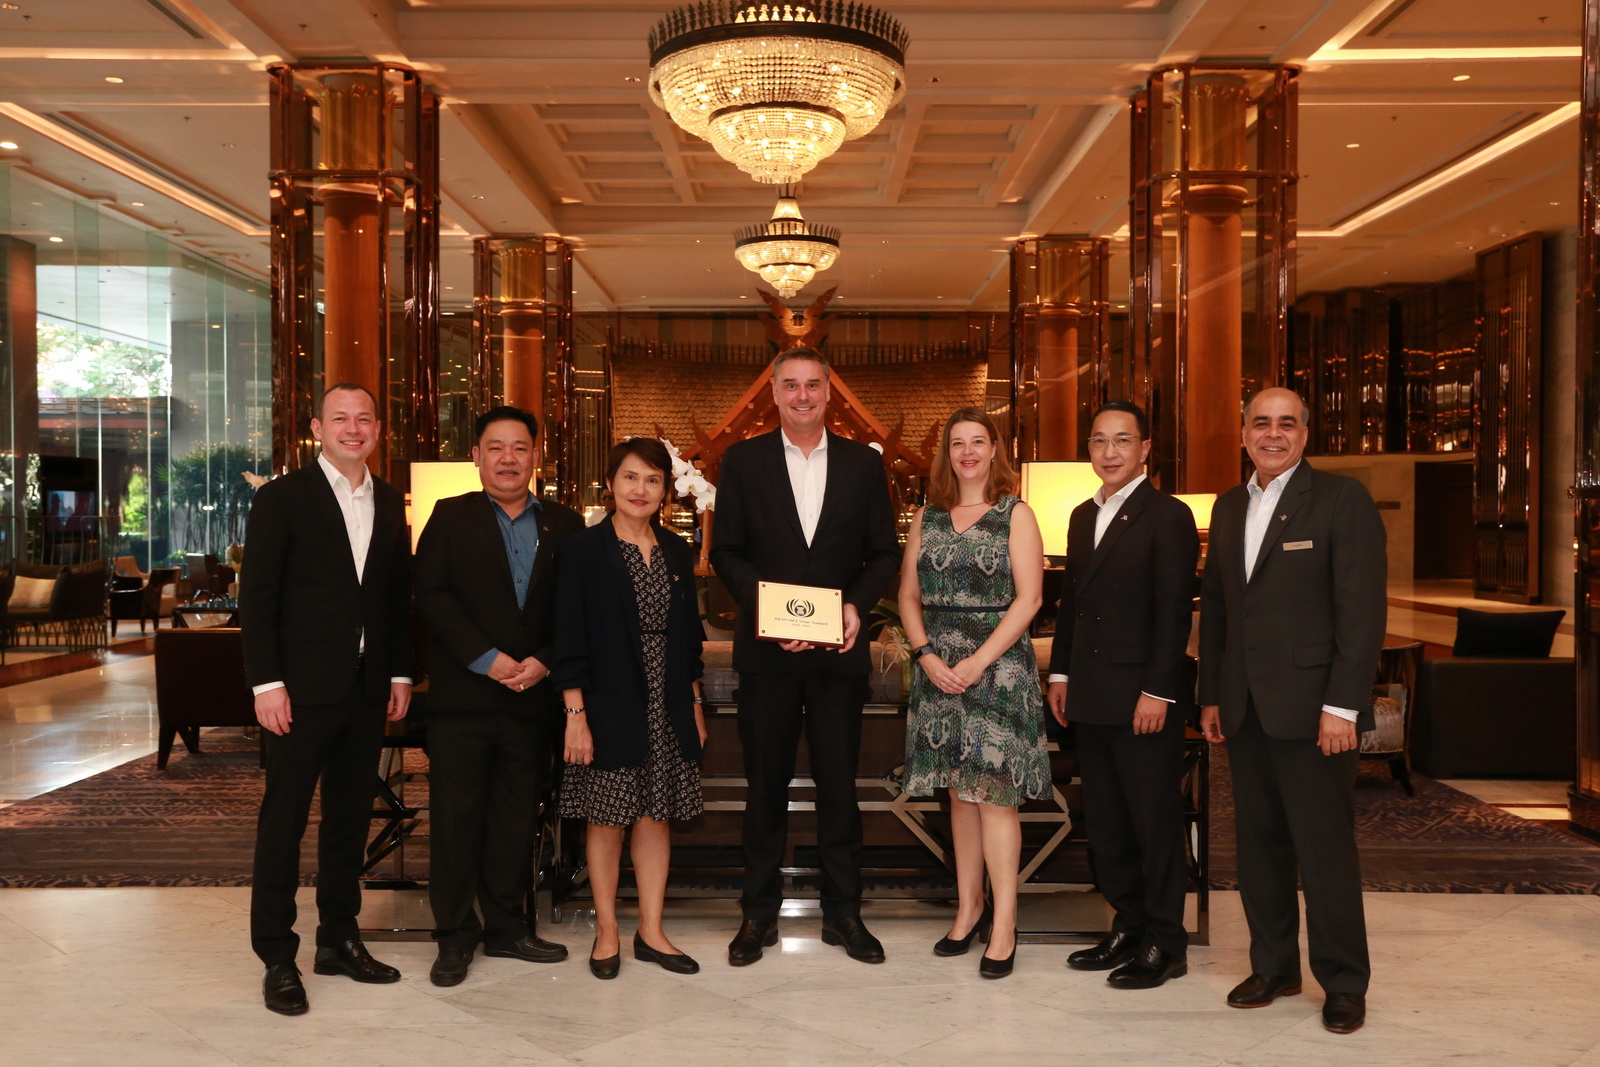 โรงแรมแบงค็อก แมริออท มาร์คีส์ ควีนส์ปาร์ค รั้งอันดับ 1 ในธุรกิจ MICE คว้ารางวัลใหญ่จาก ASEAN Tourism